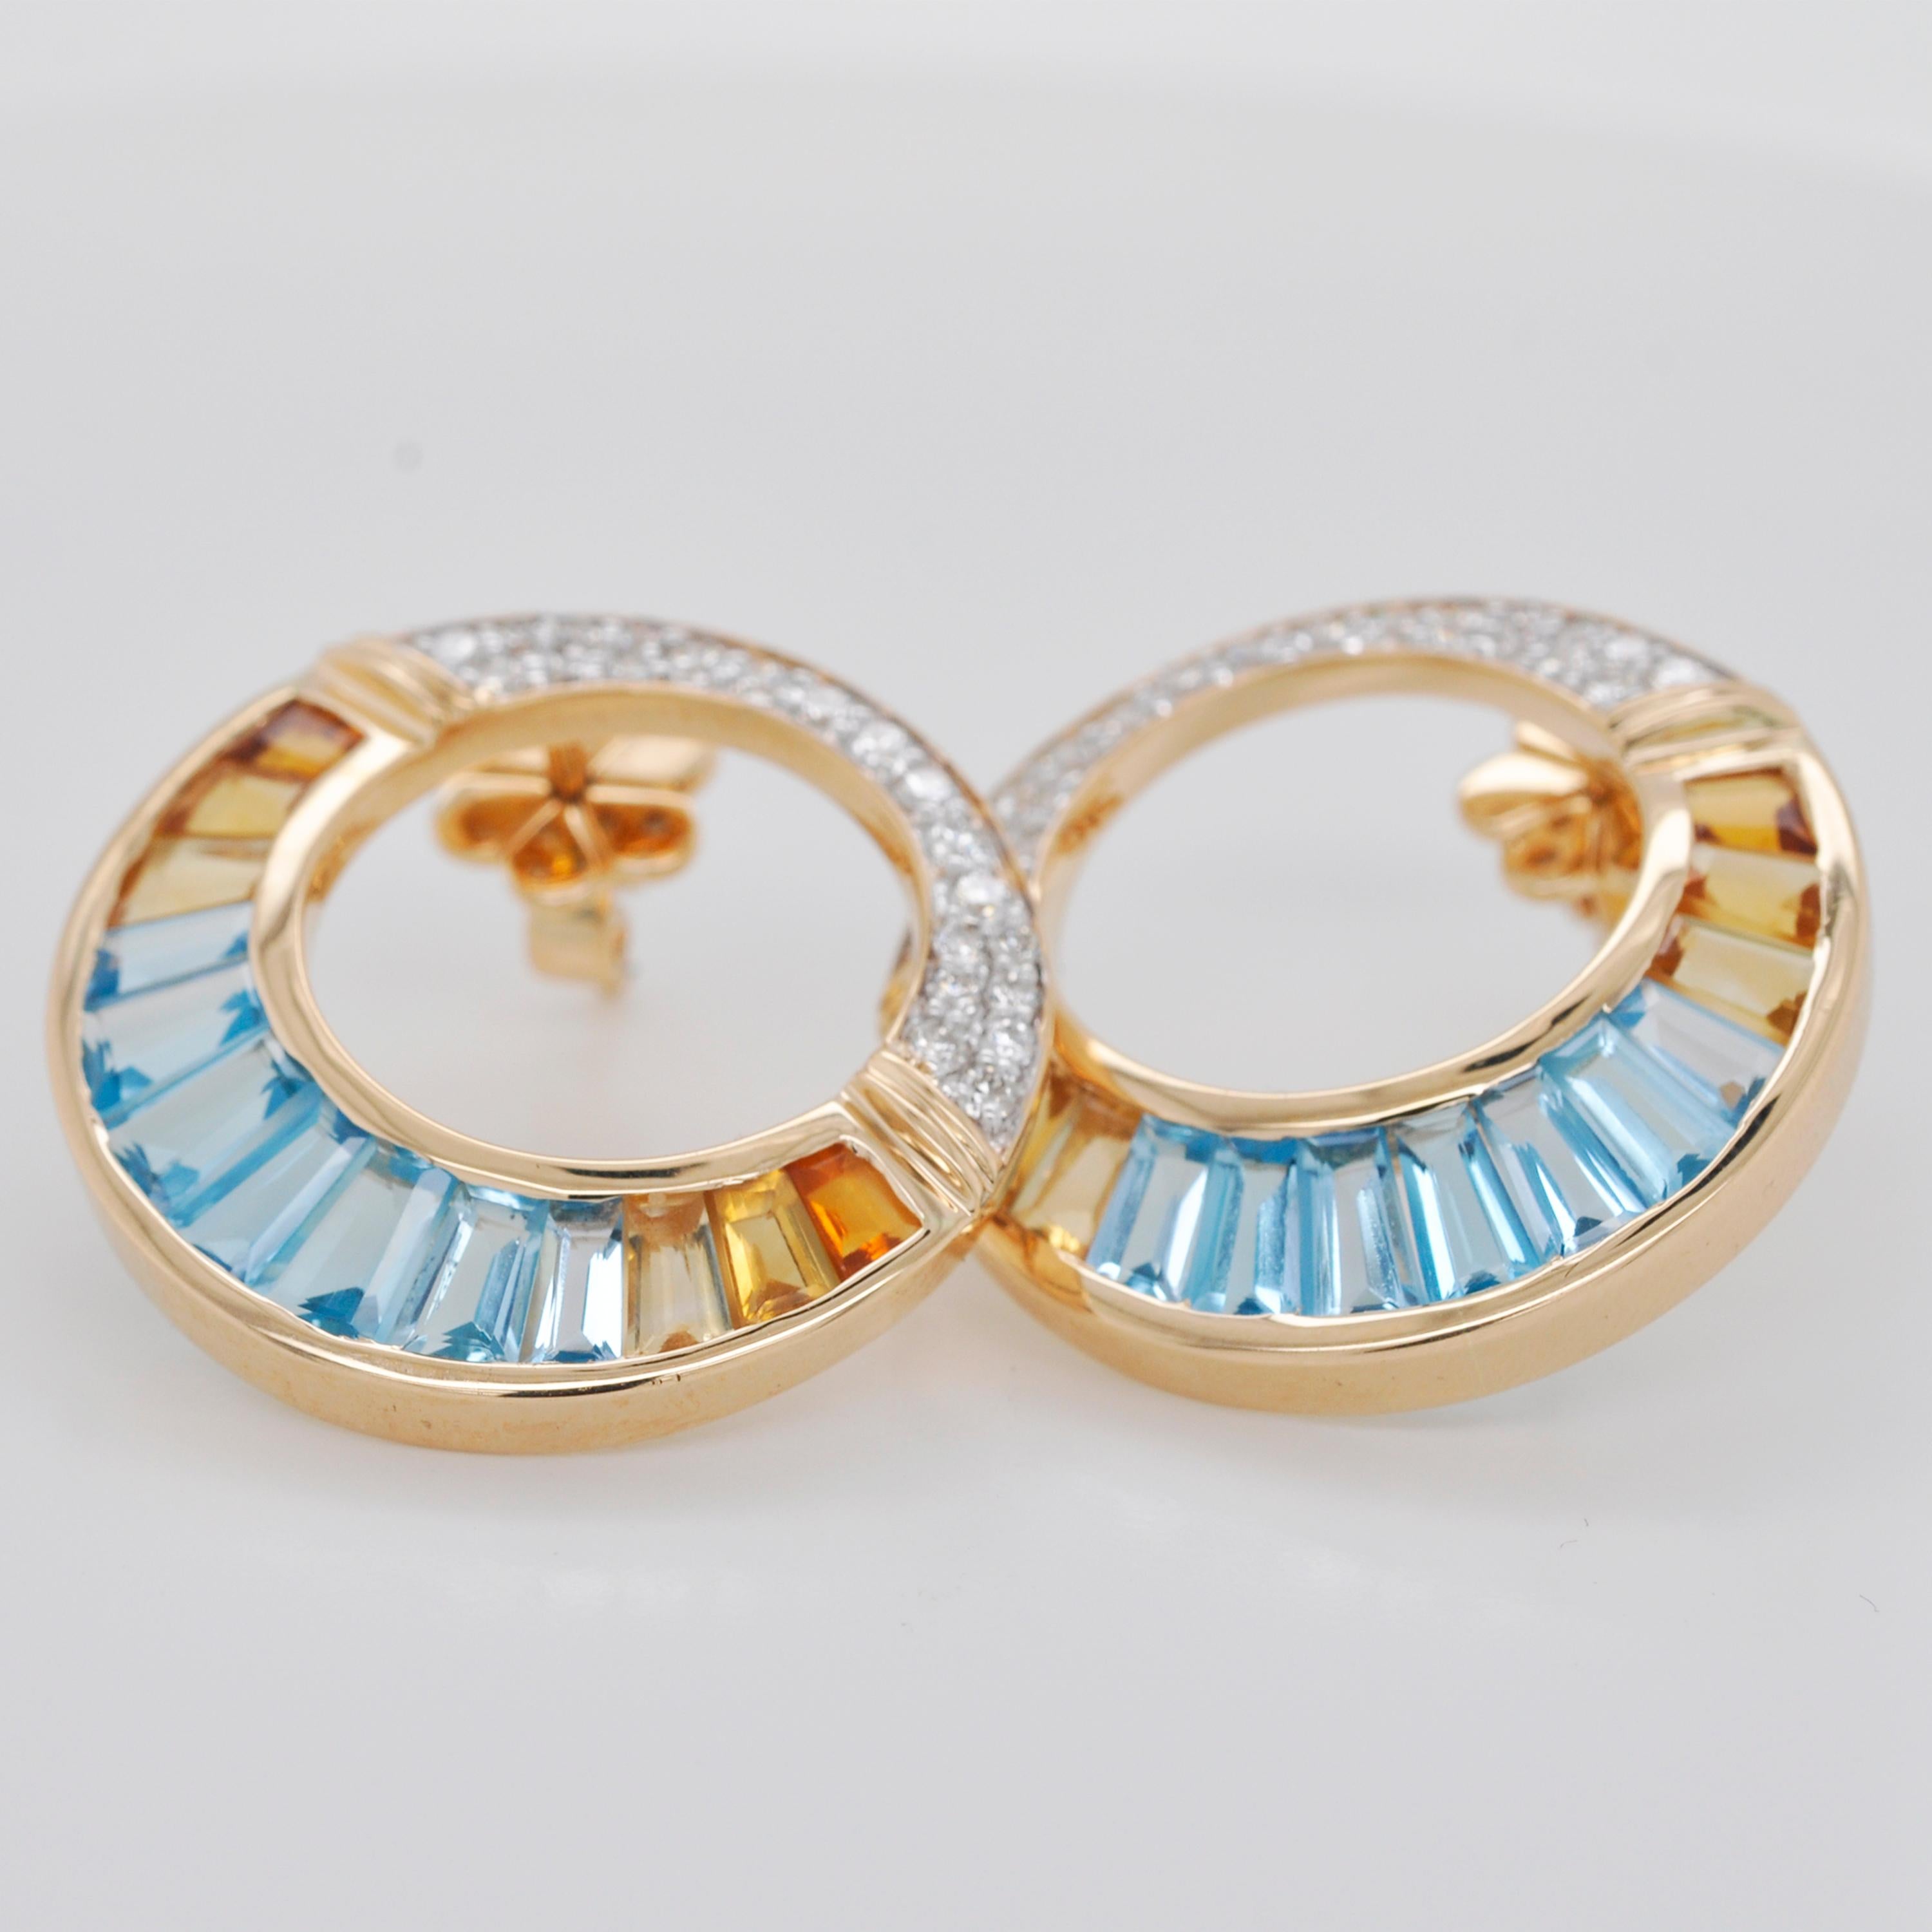 18K Gold Swiss Blue Topaz Citrine Baguette Diamond Pendant Brooch Earrings Set For Sale 6